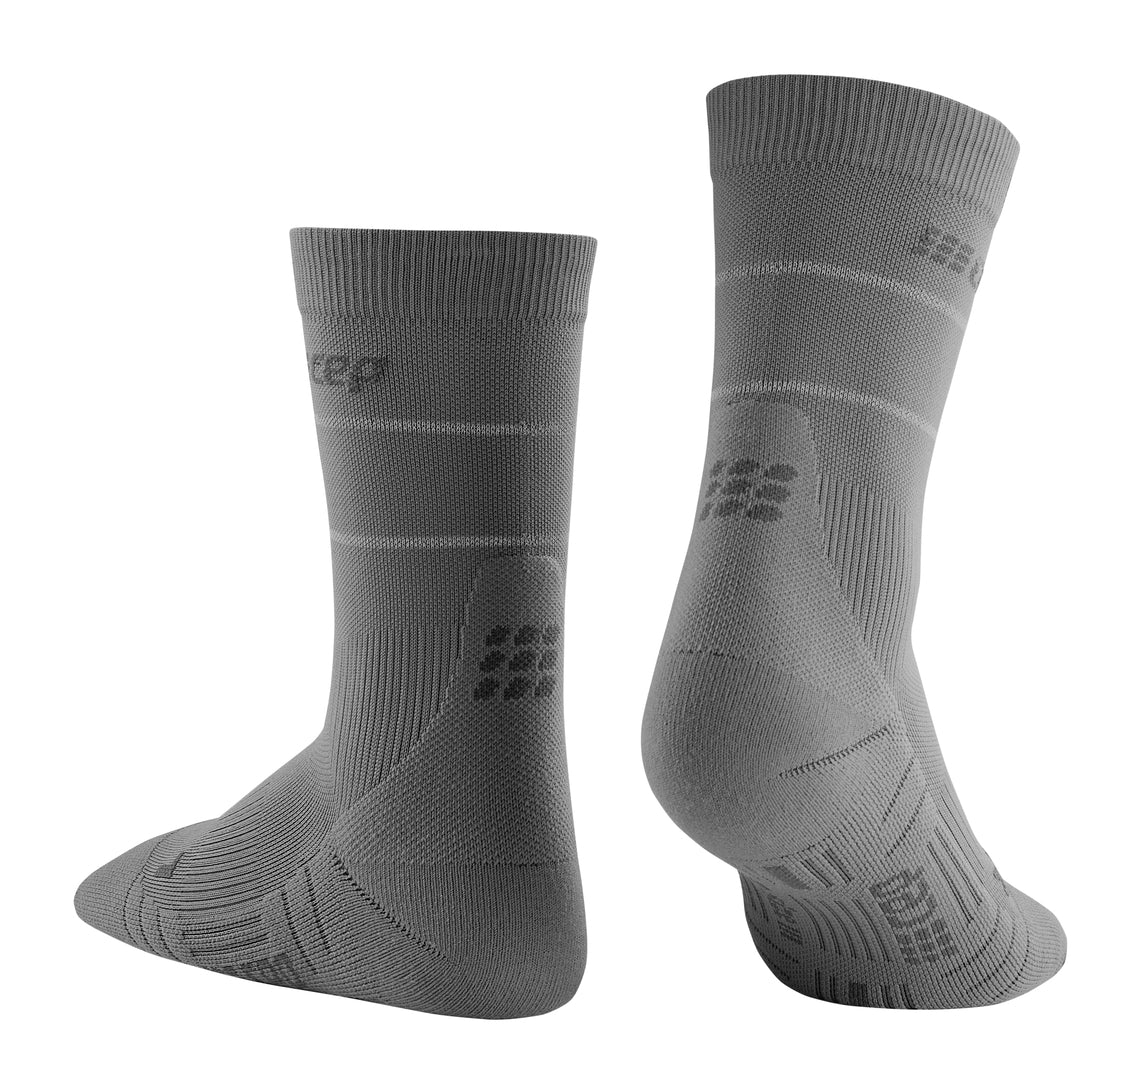 Reflective Compression Mid Cut Socks – Compression Care